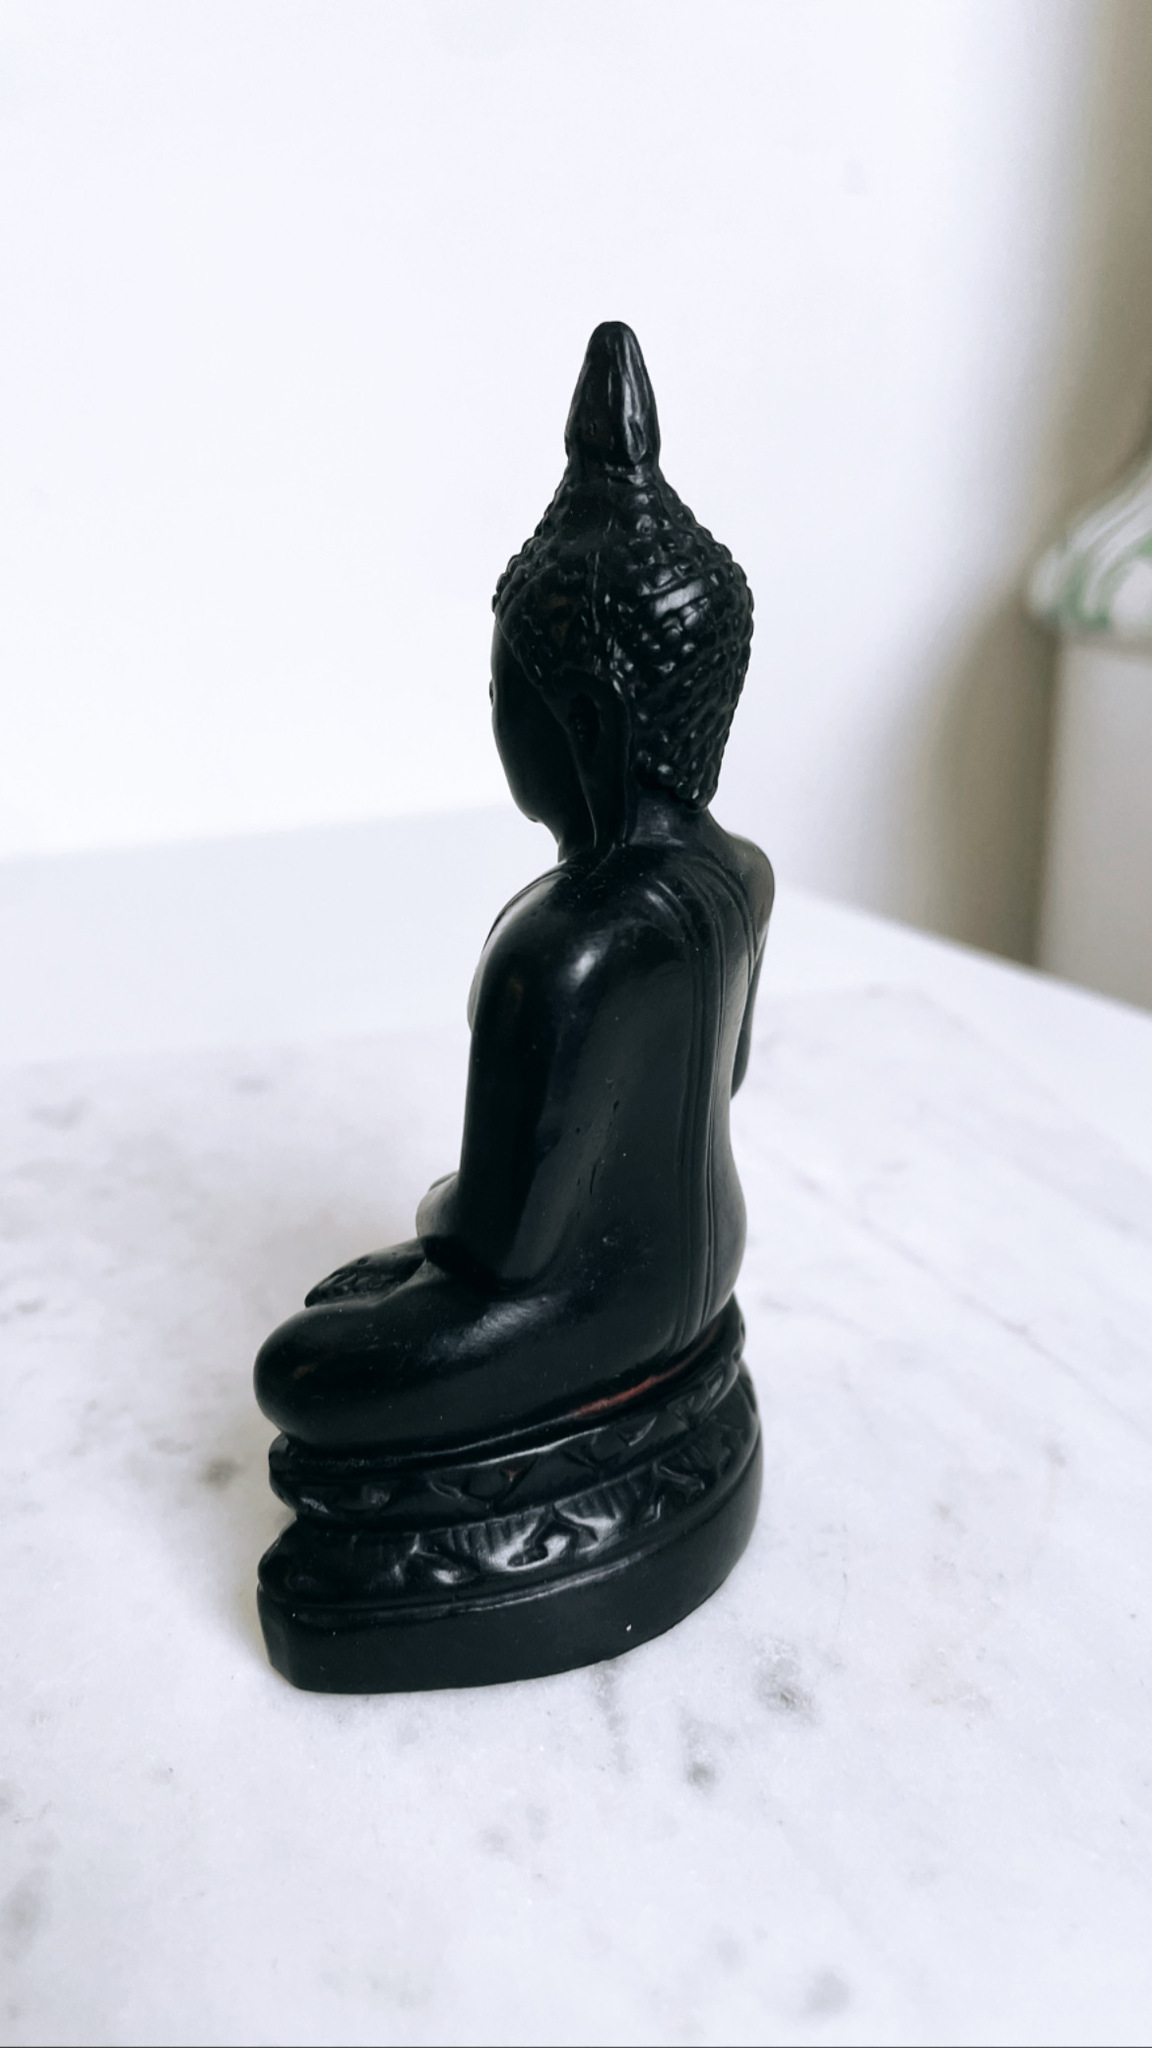 Buddha, staty